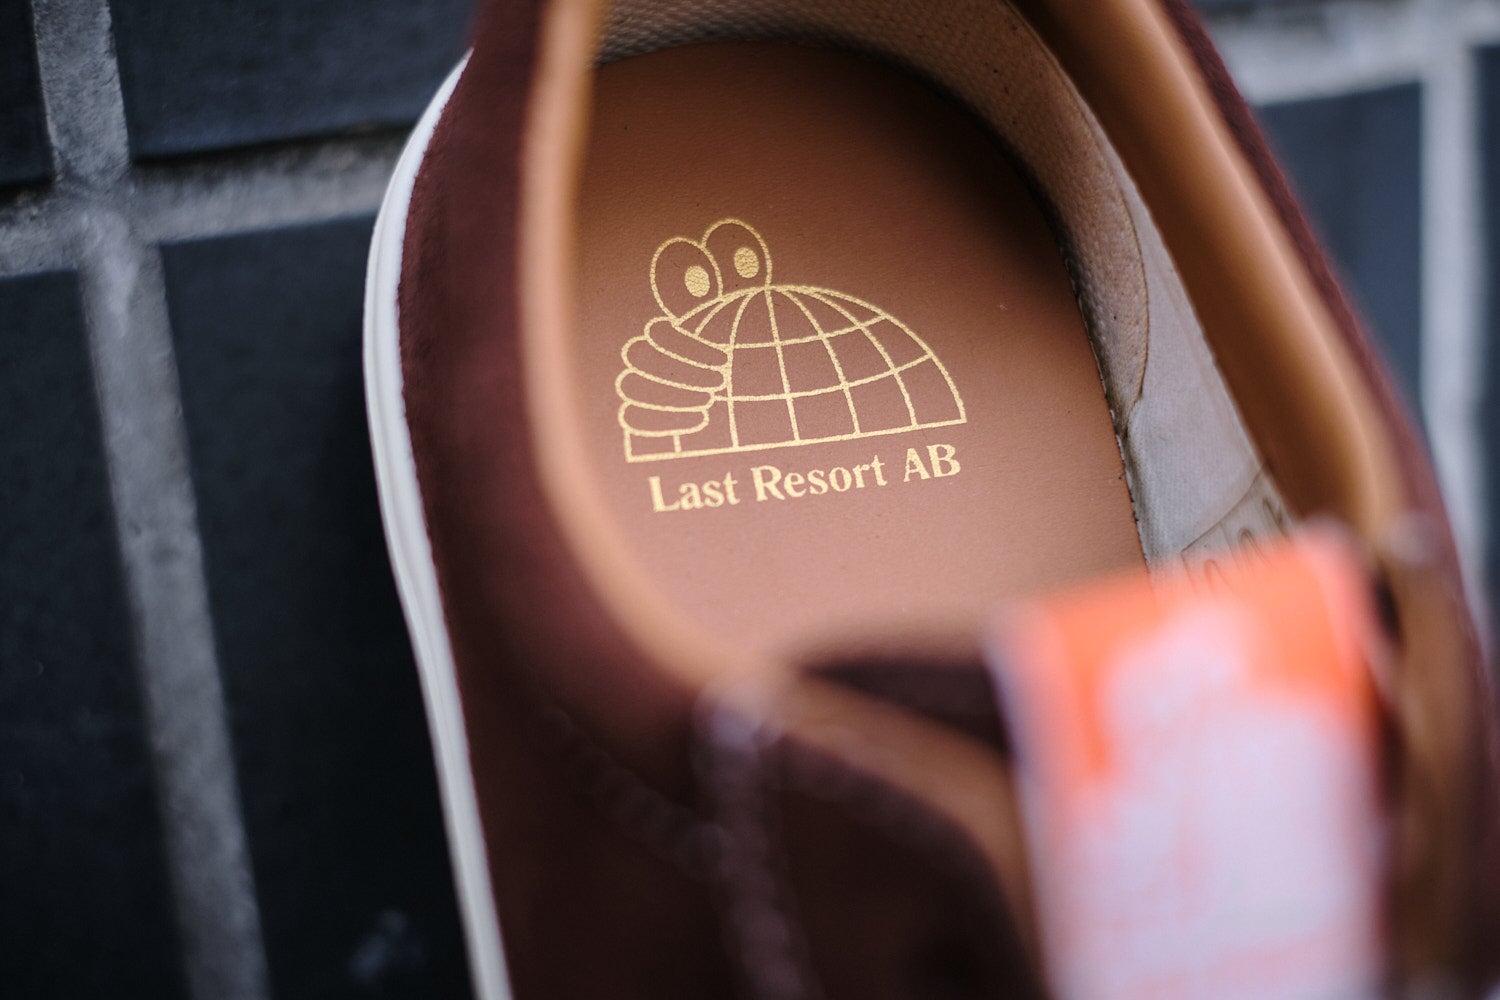 Last Resort Footwear VM001 Suede Lo - Choc Brown-White Sneaker Last Resort AB 